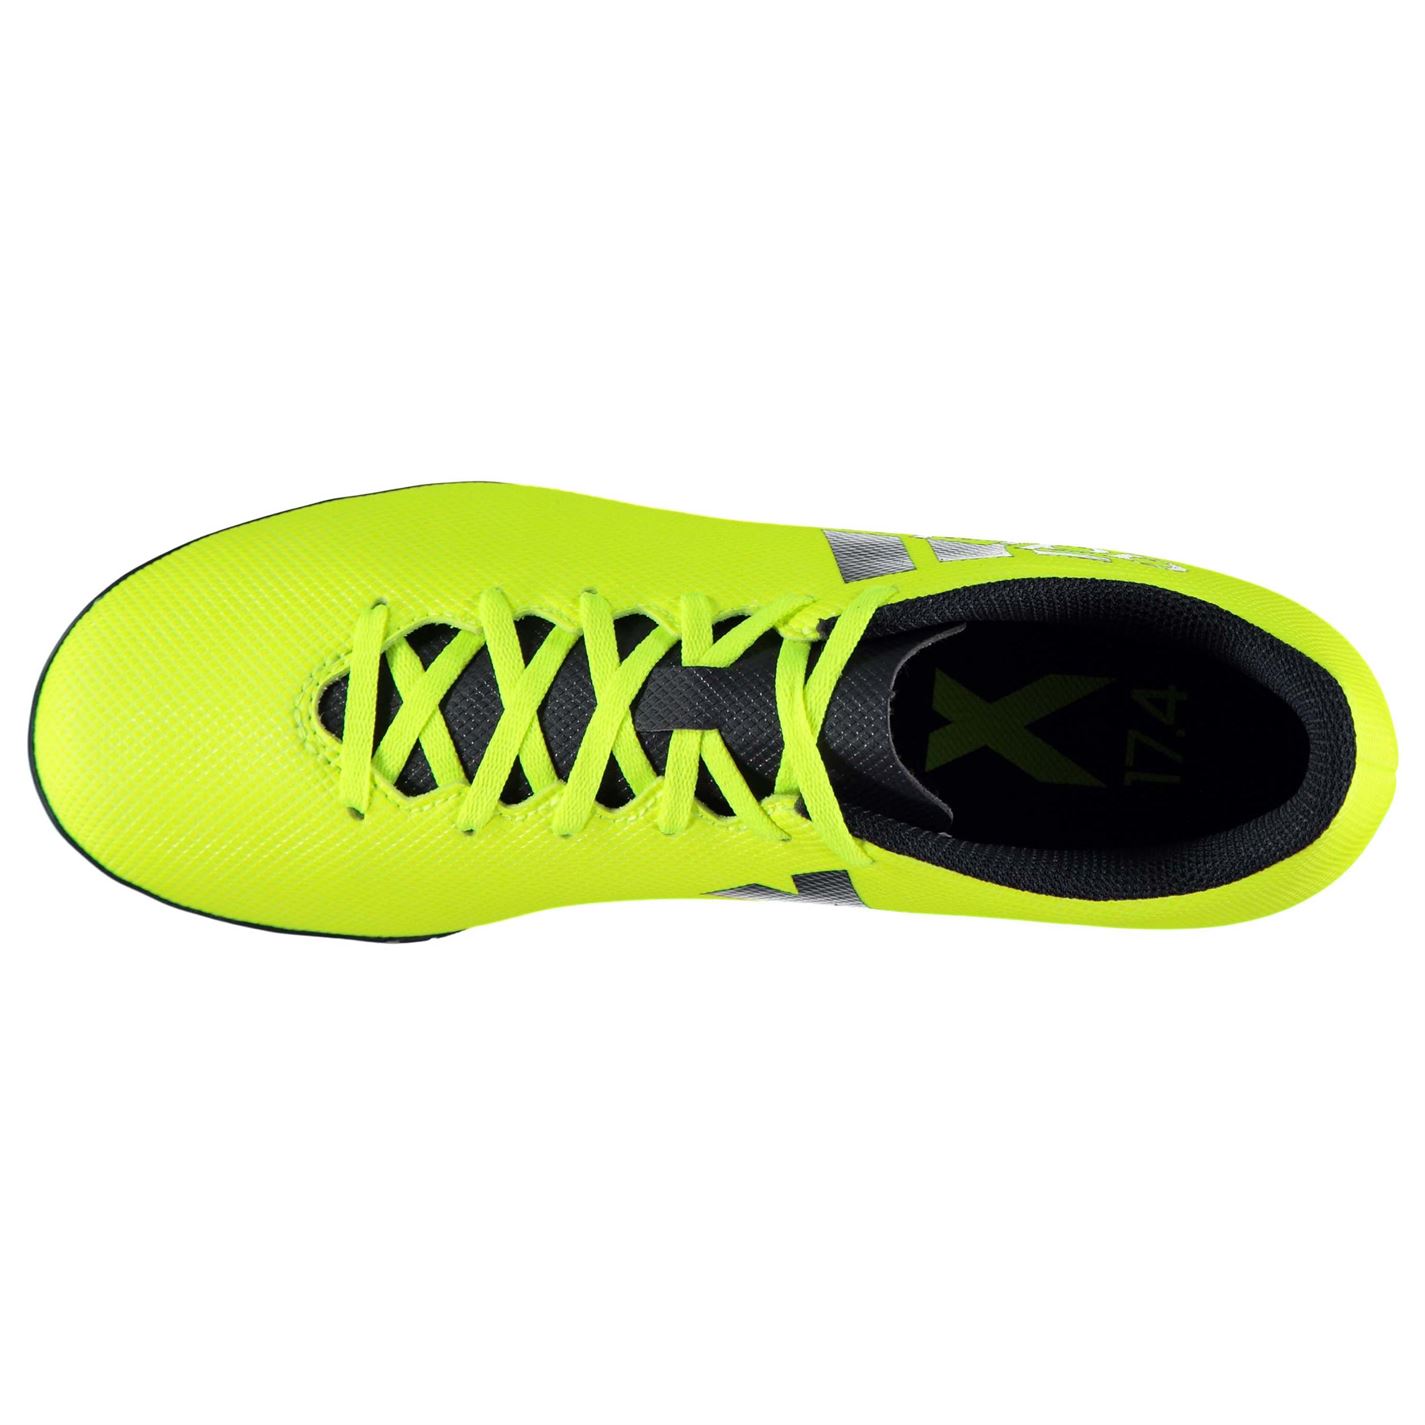 Adidasi Gazon Sintetic adidas X 17.4 pentru Barbati galben ink